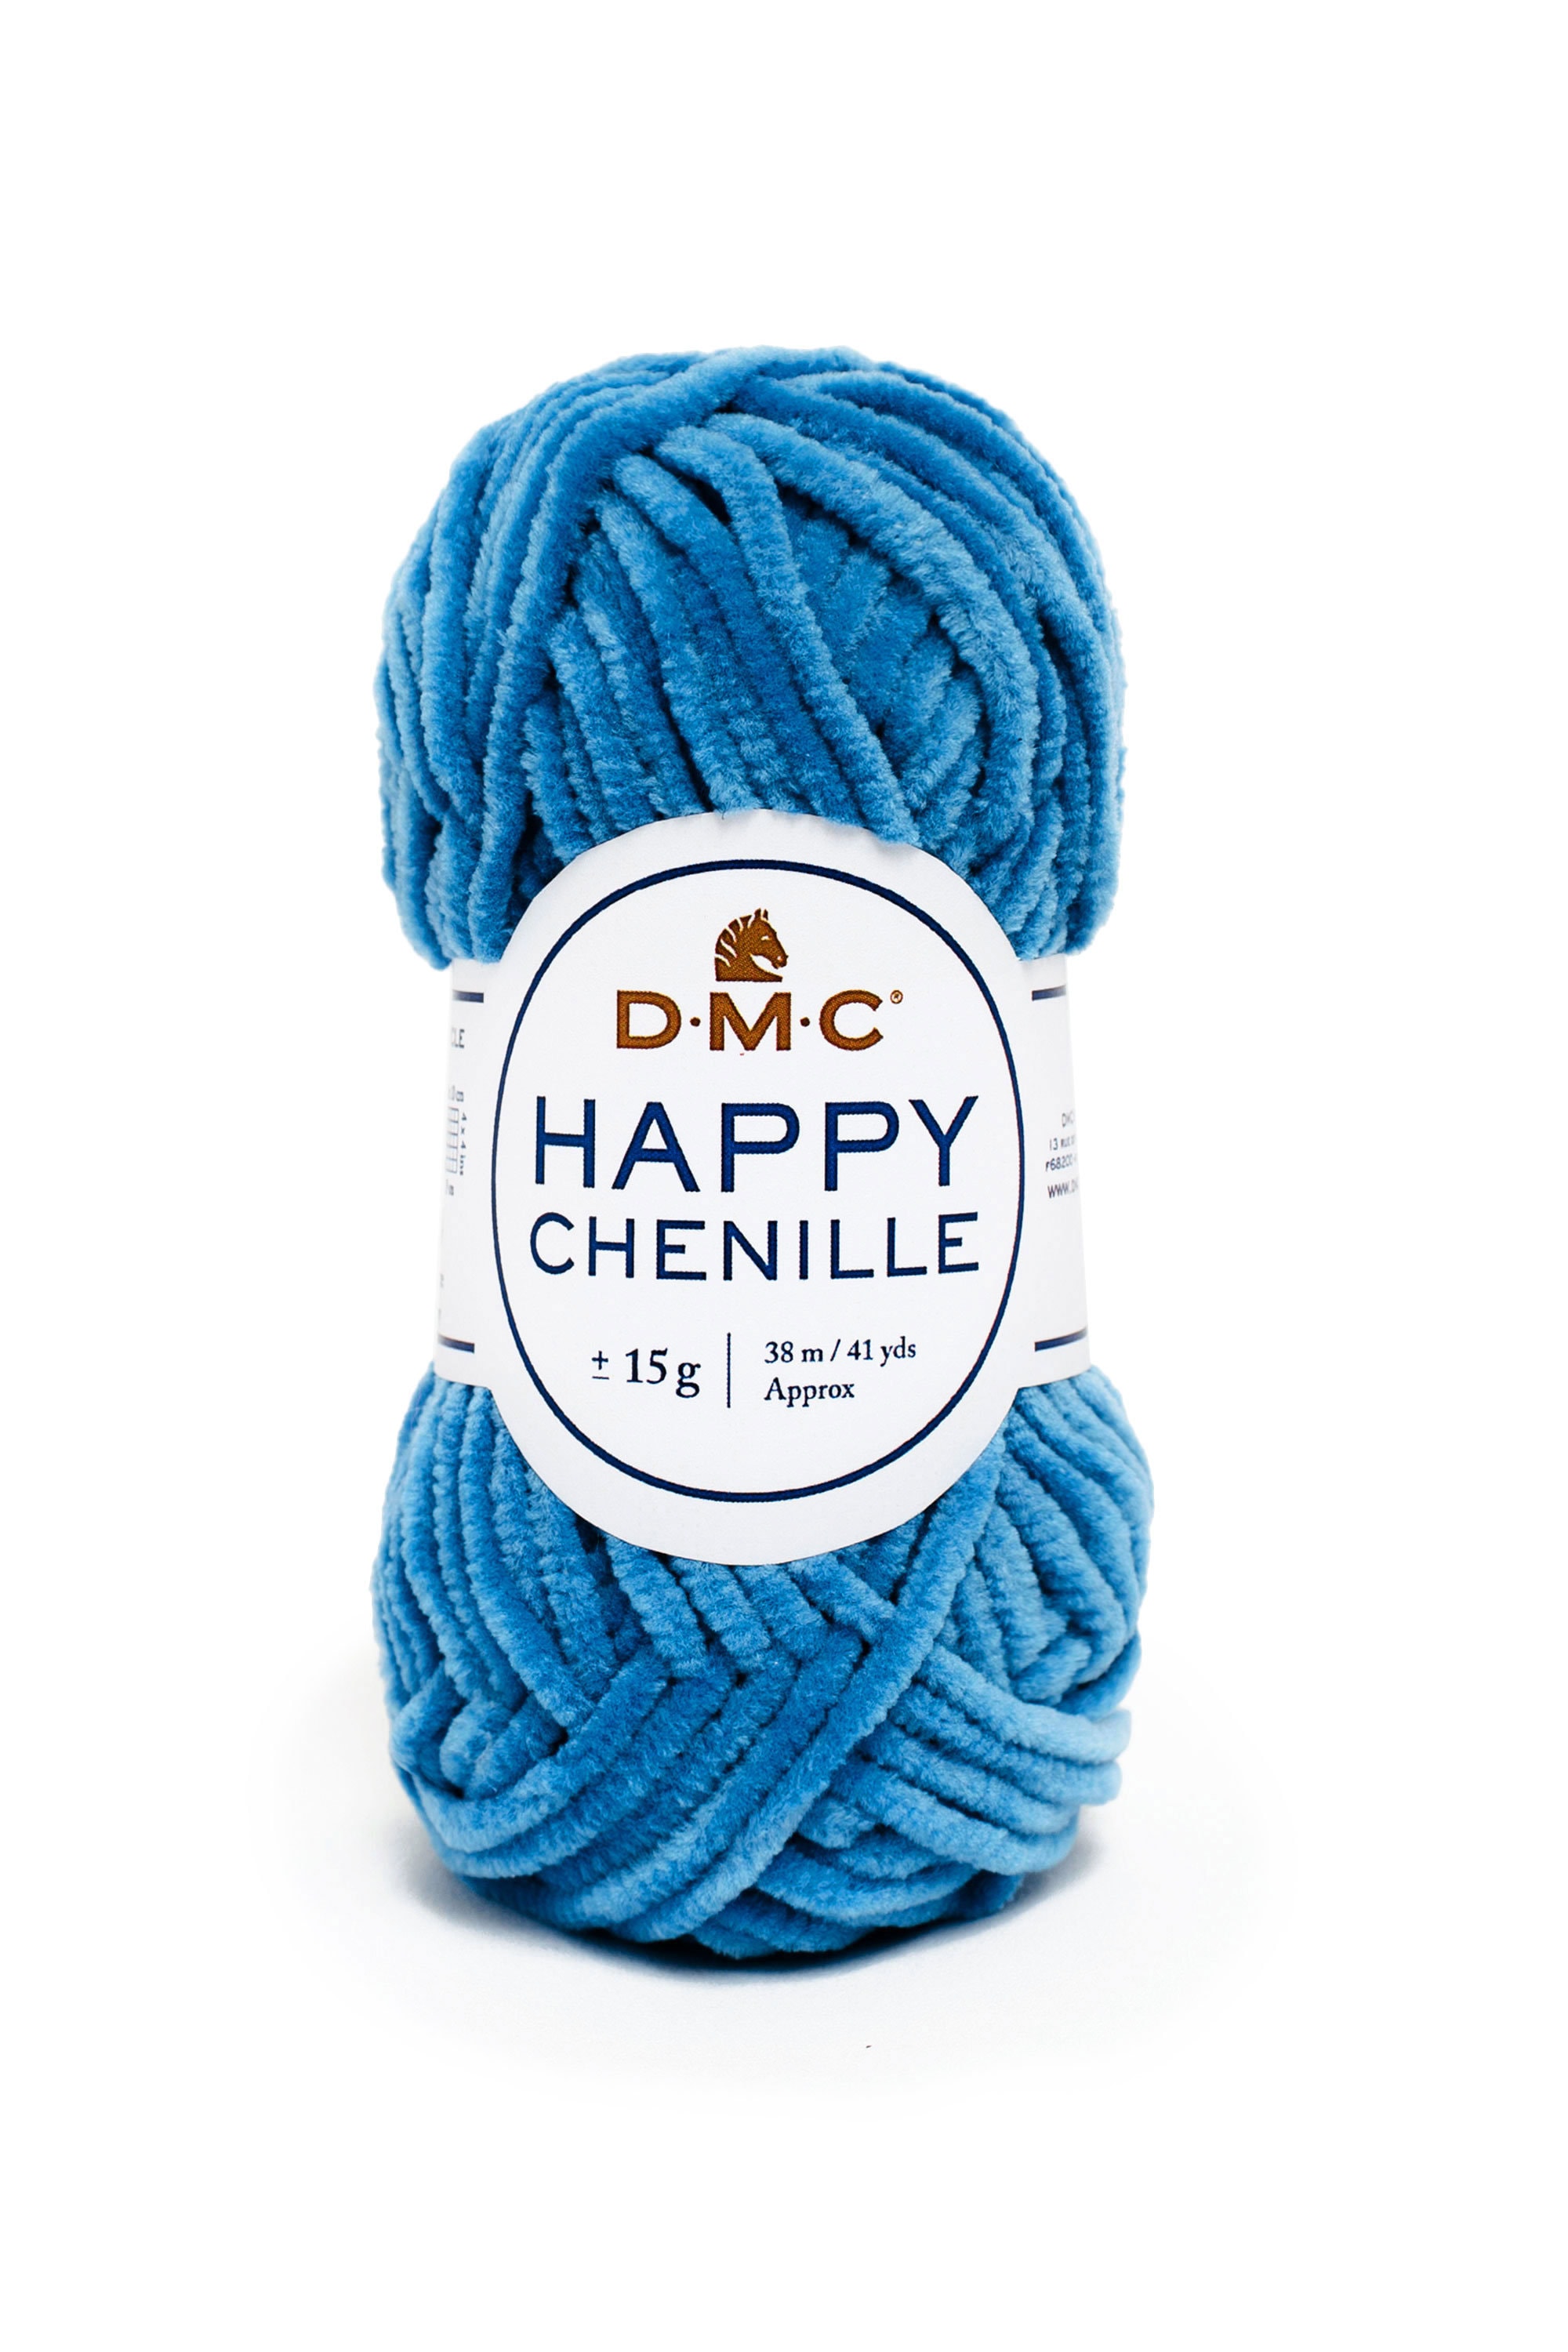 Buy DMC Happy Chenille Fluffy, Soft Crochet Yarn for Amigurumi